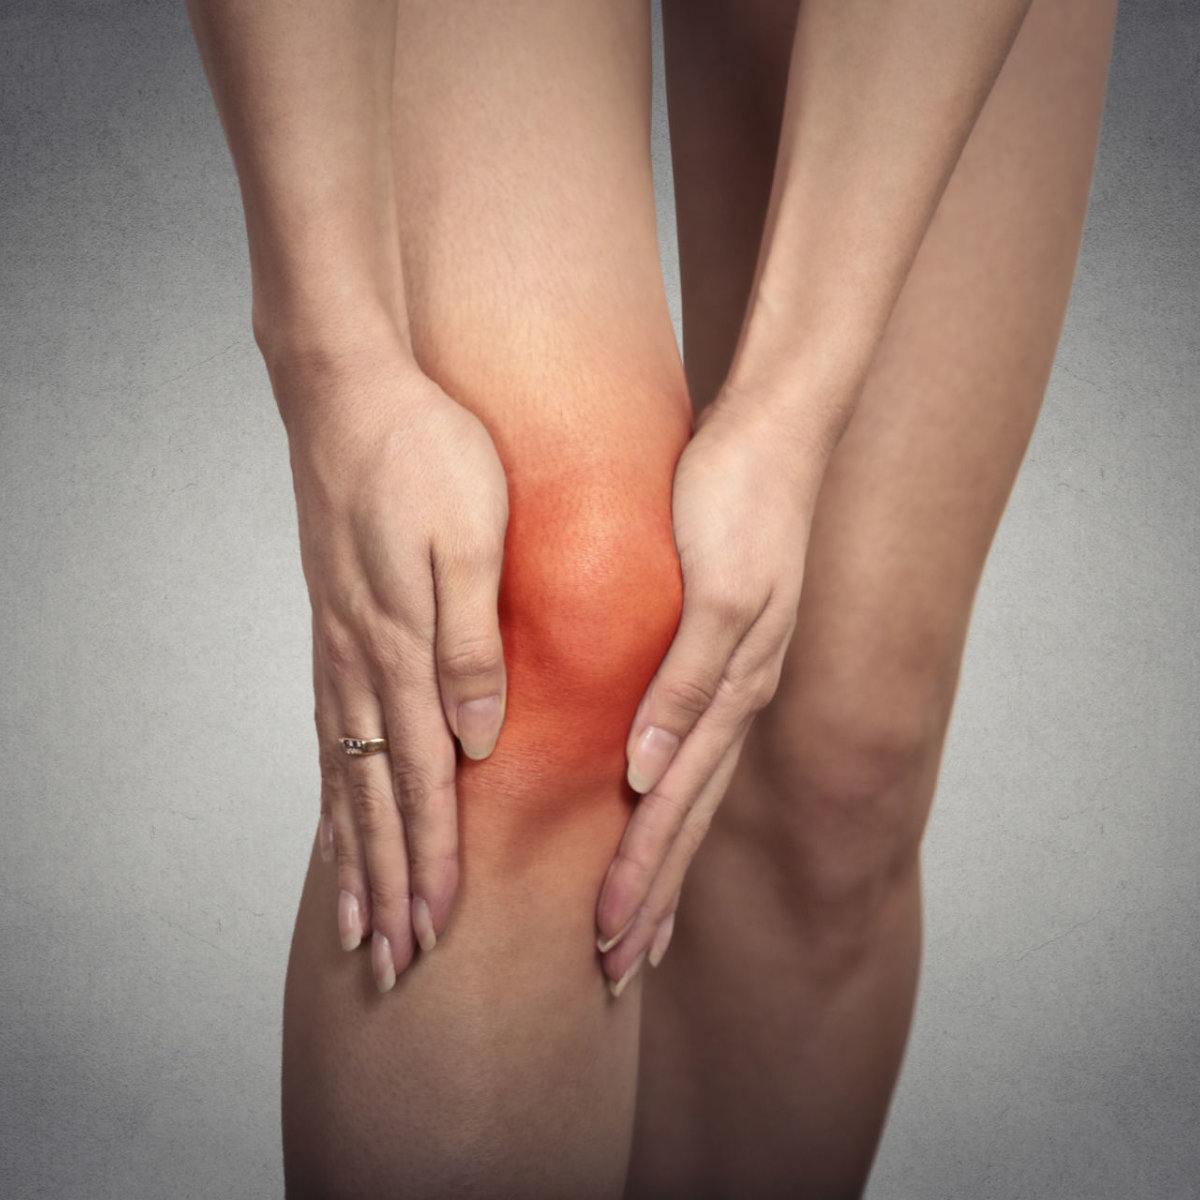 swelling in joints of leg skausmas spindulių-cisternų sąnarių